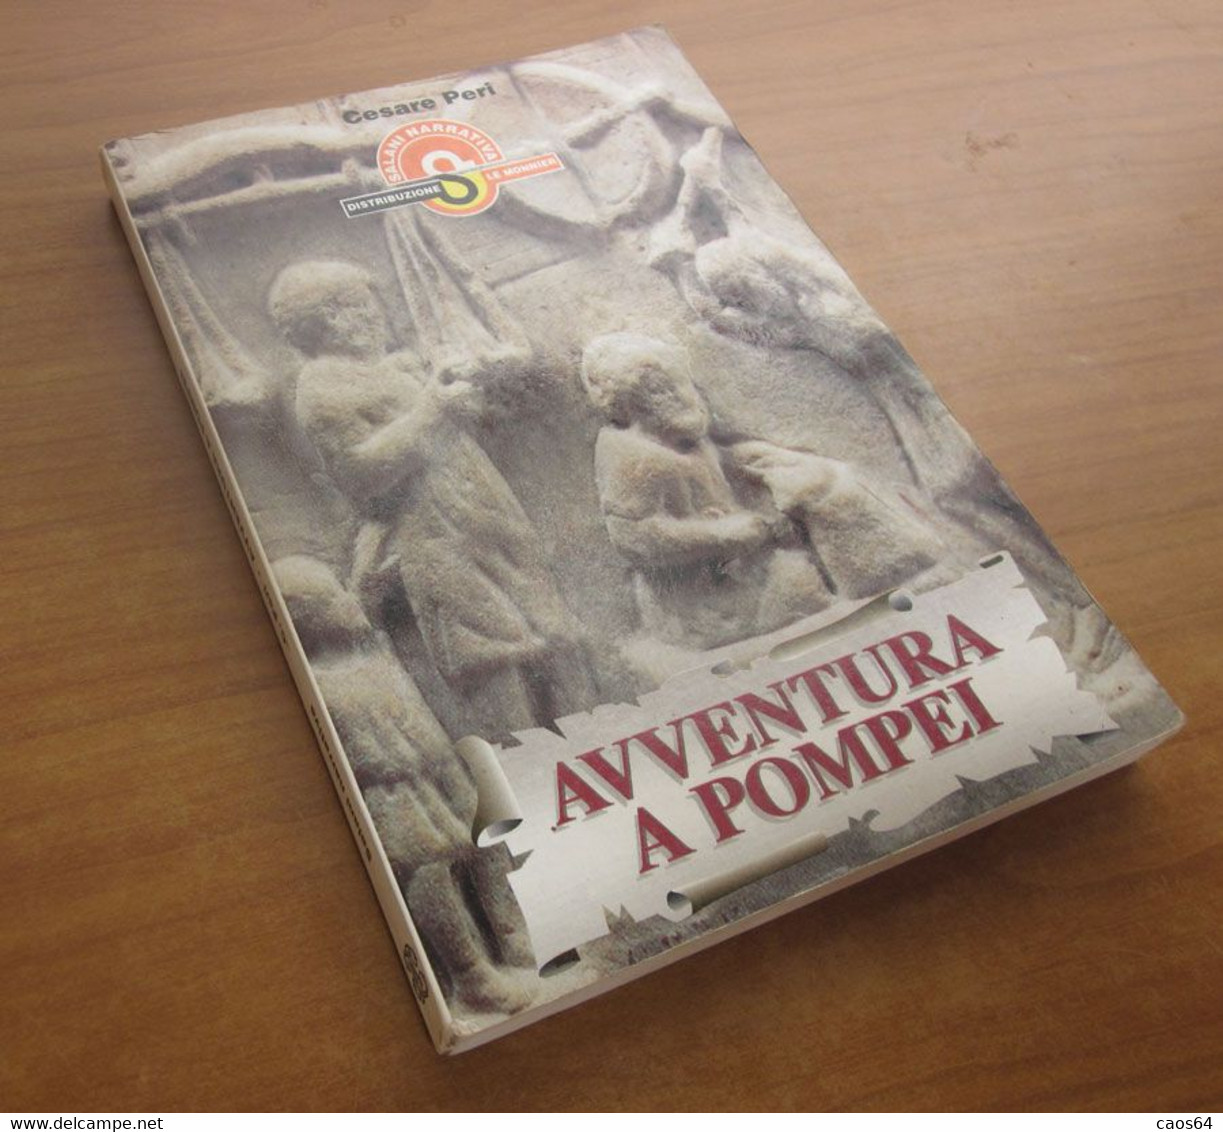 Avventura A Pompei	  Cesare Peri  1996  Salani - Teenagers